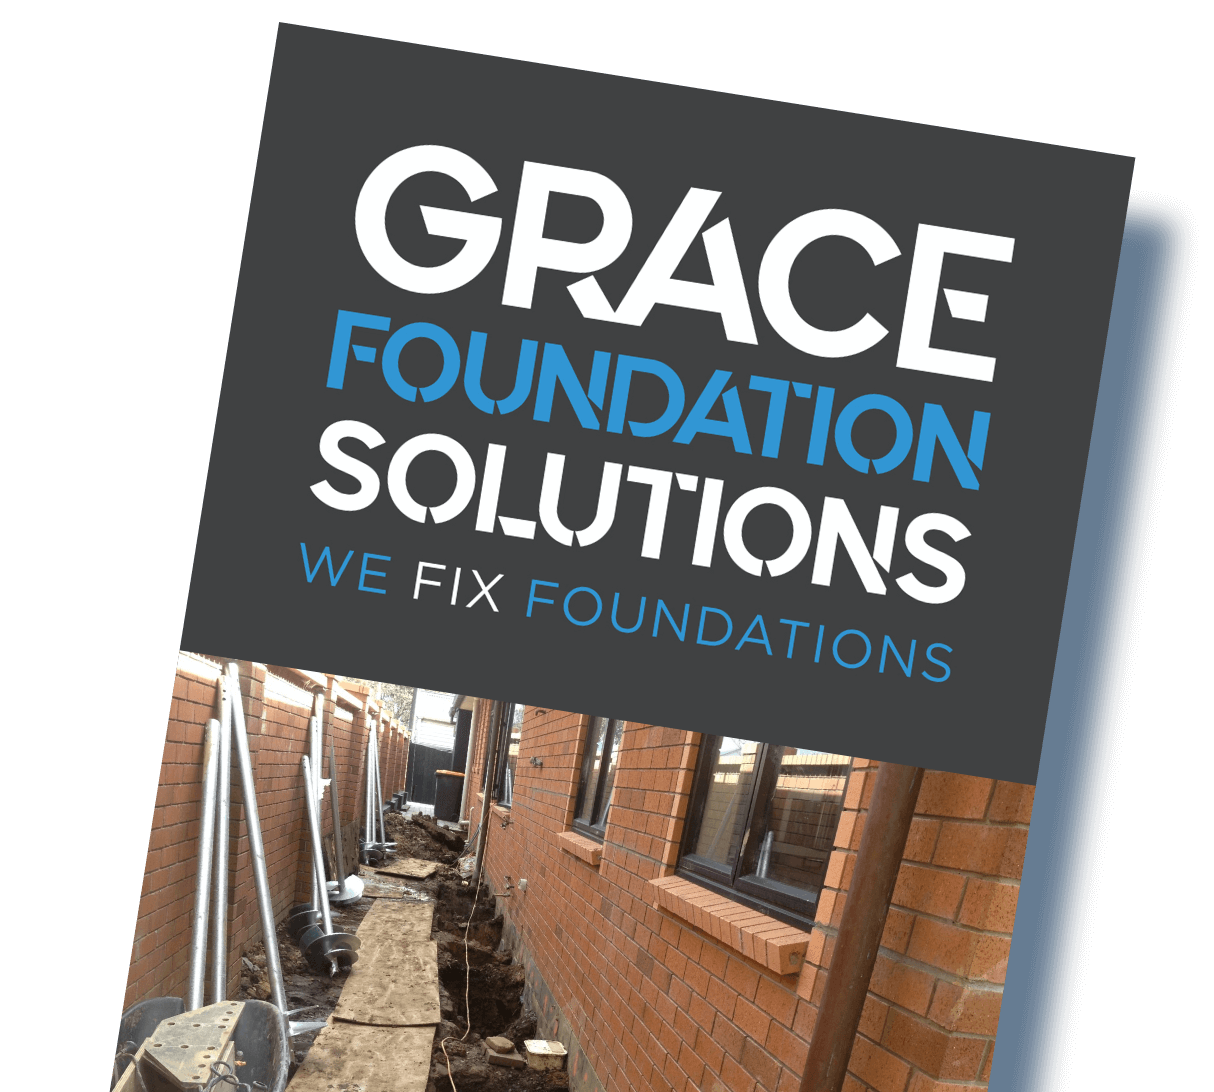 We fix foundations!